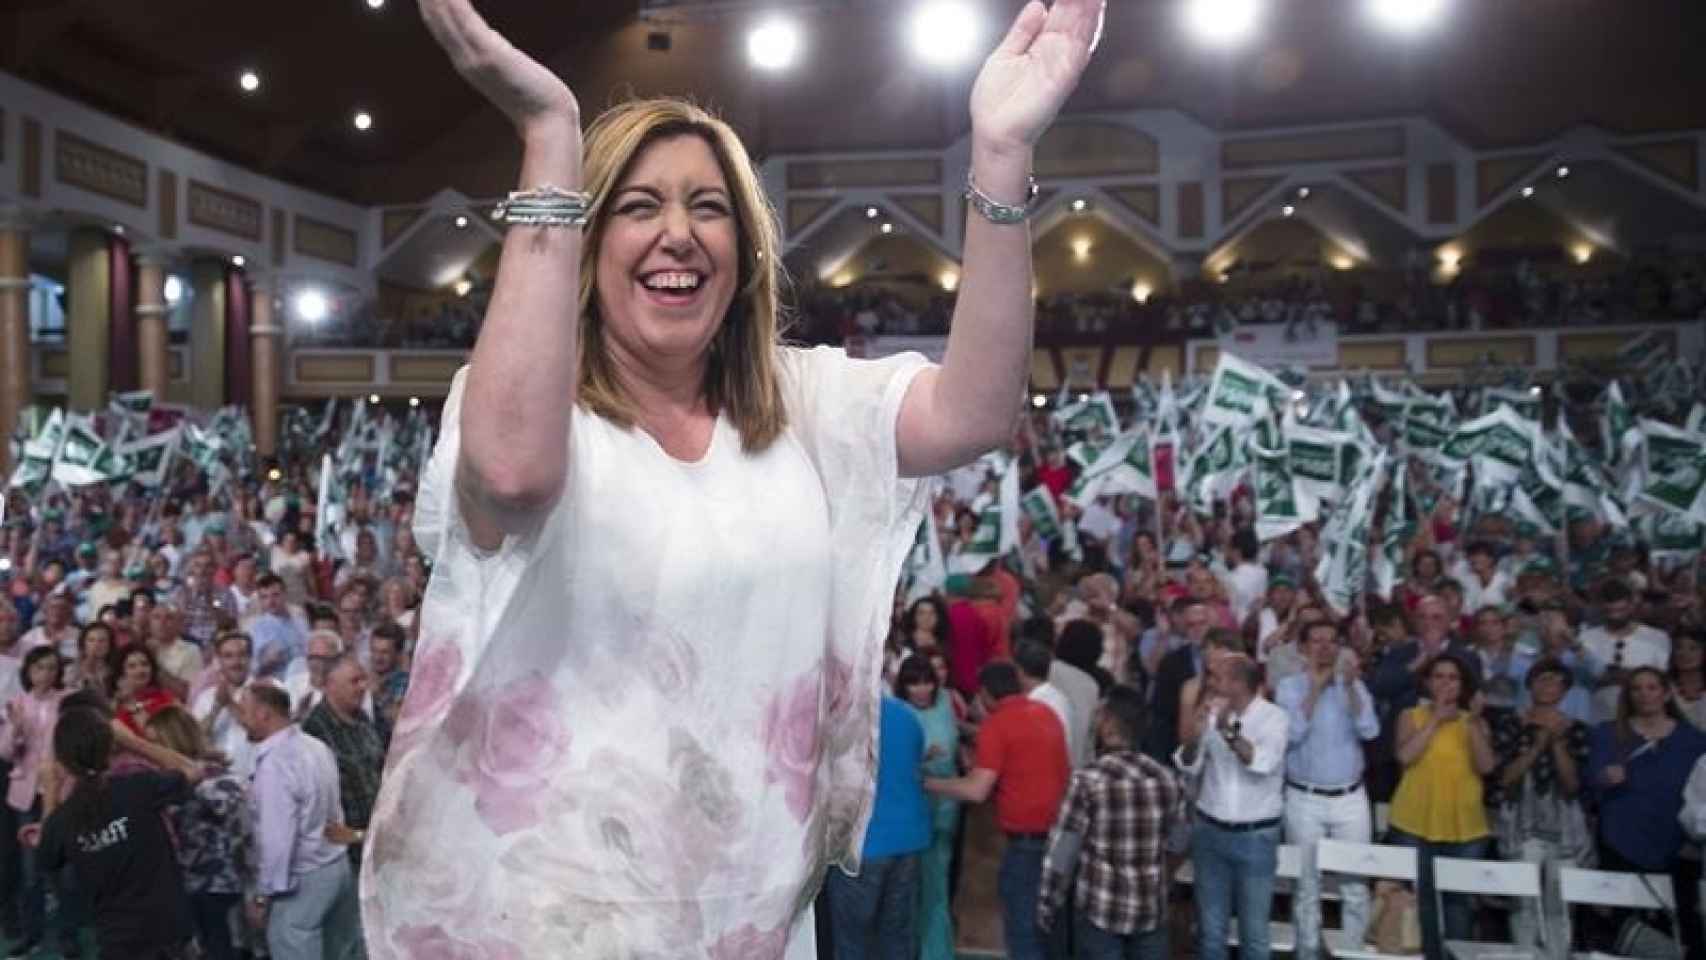 La secretaria general del PSOE Andalucía, Susana Díaz, durante un acto electoral/Jorge Zapata/EFE